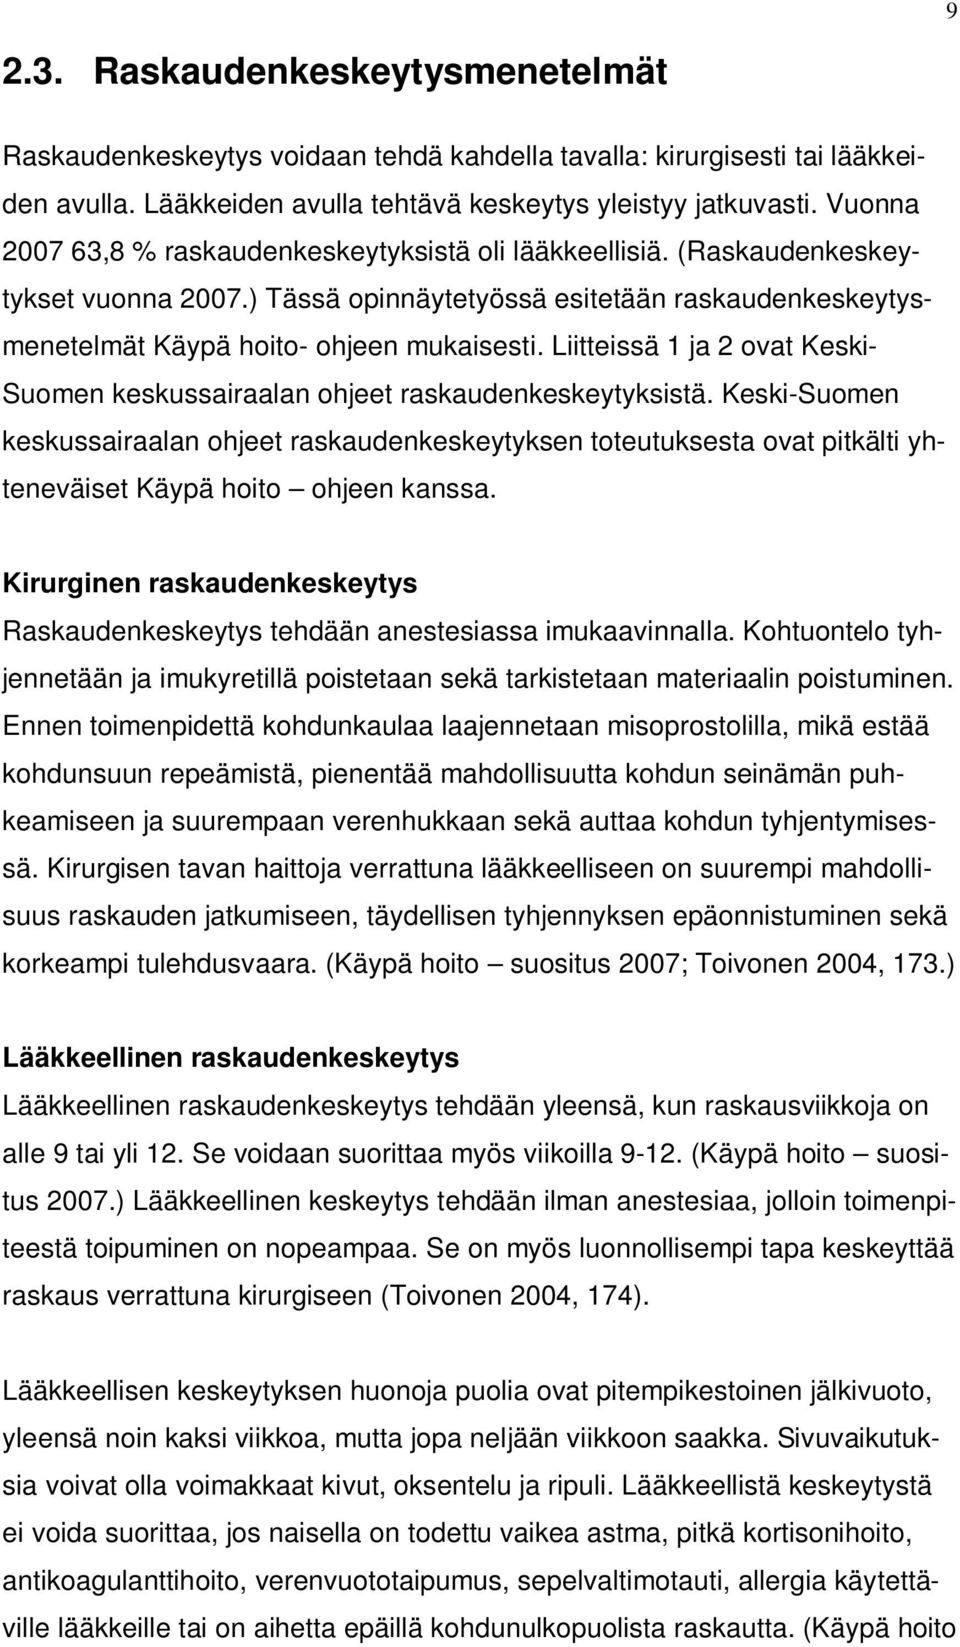 Liitteissä 1 ja 2 ovat Keski- Suomen keskussairaalan ohjeet raskaudenkeskeytyksistä.